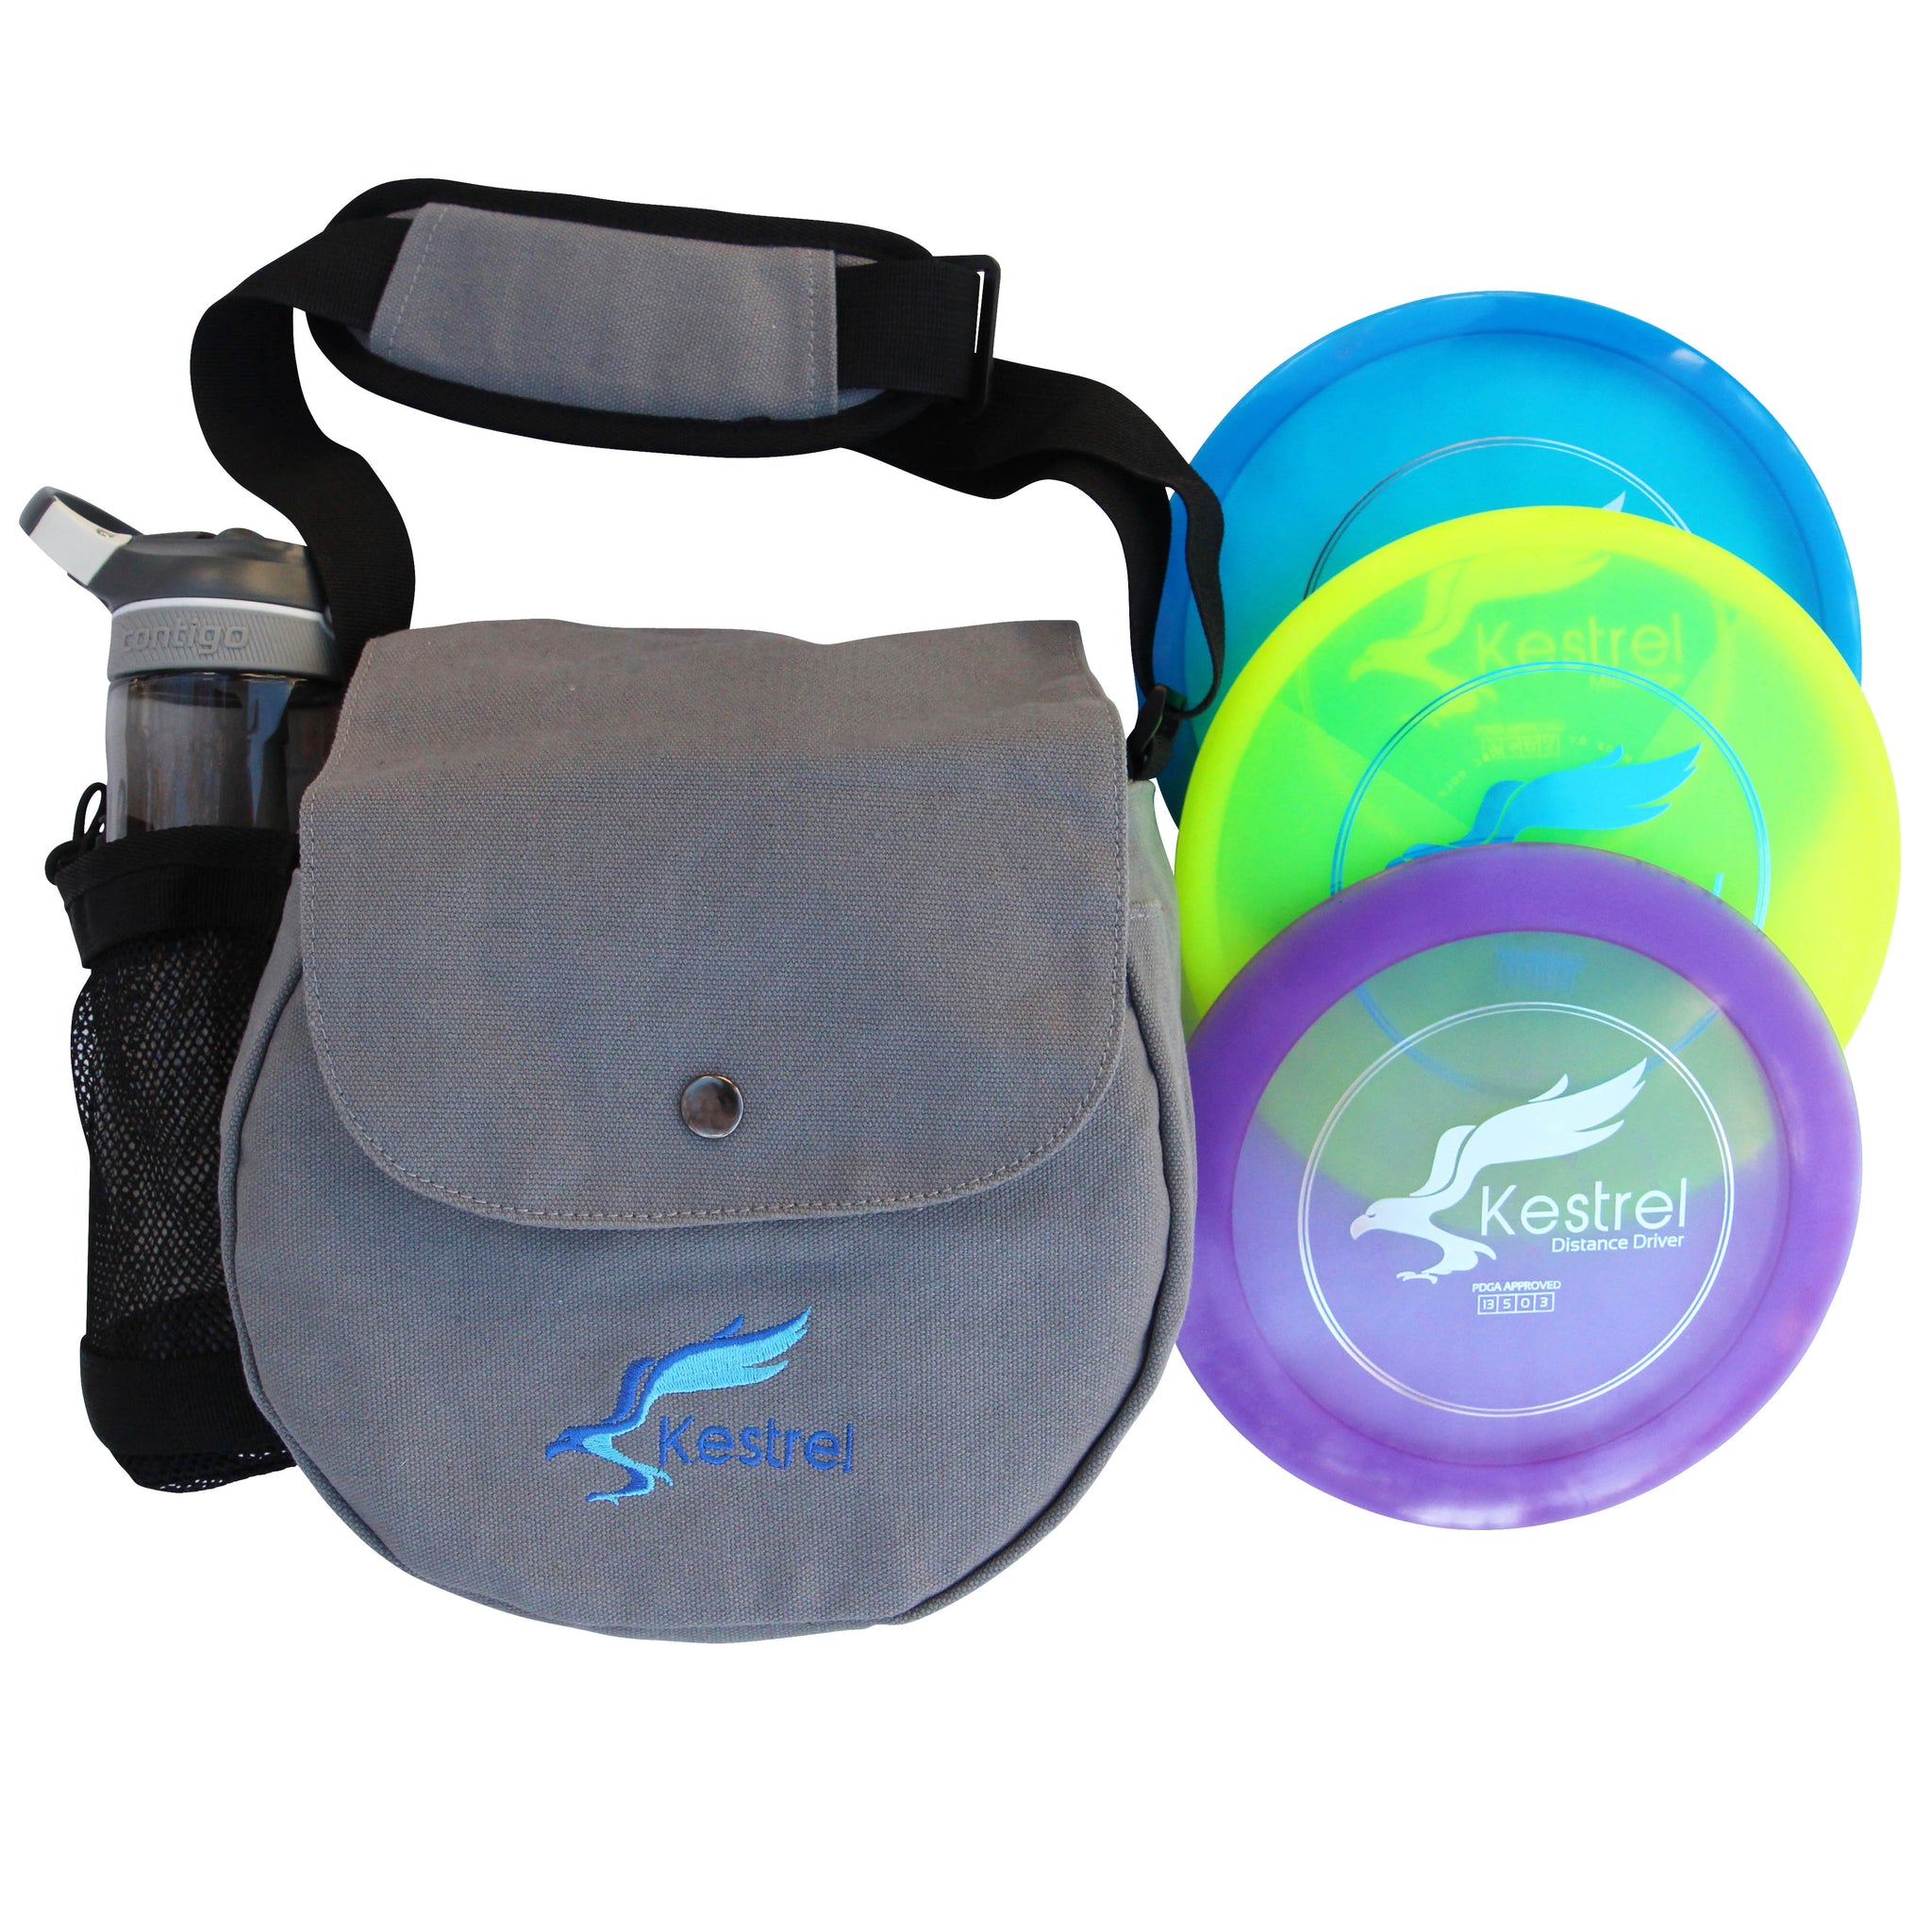 Kestrel Disc Golf Pro Set, 3 Disc Pro Pack Bundle + Bag